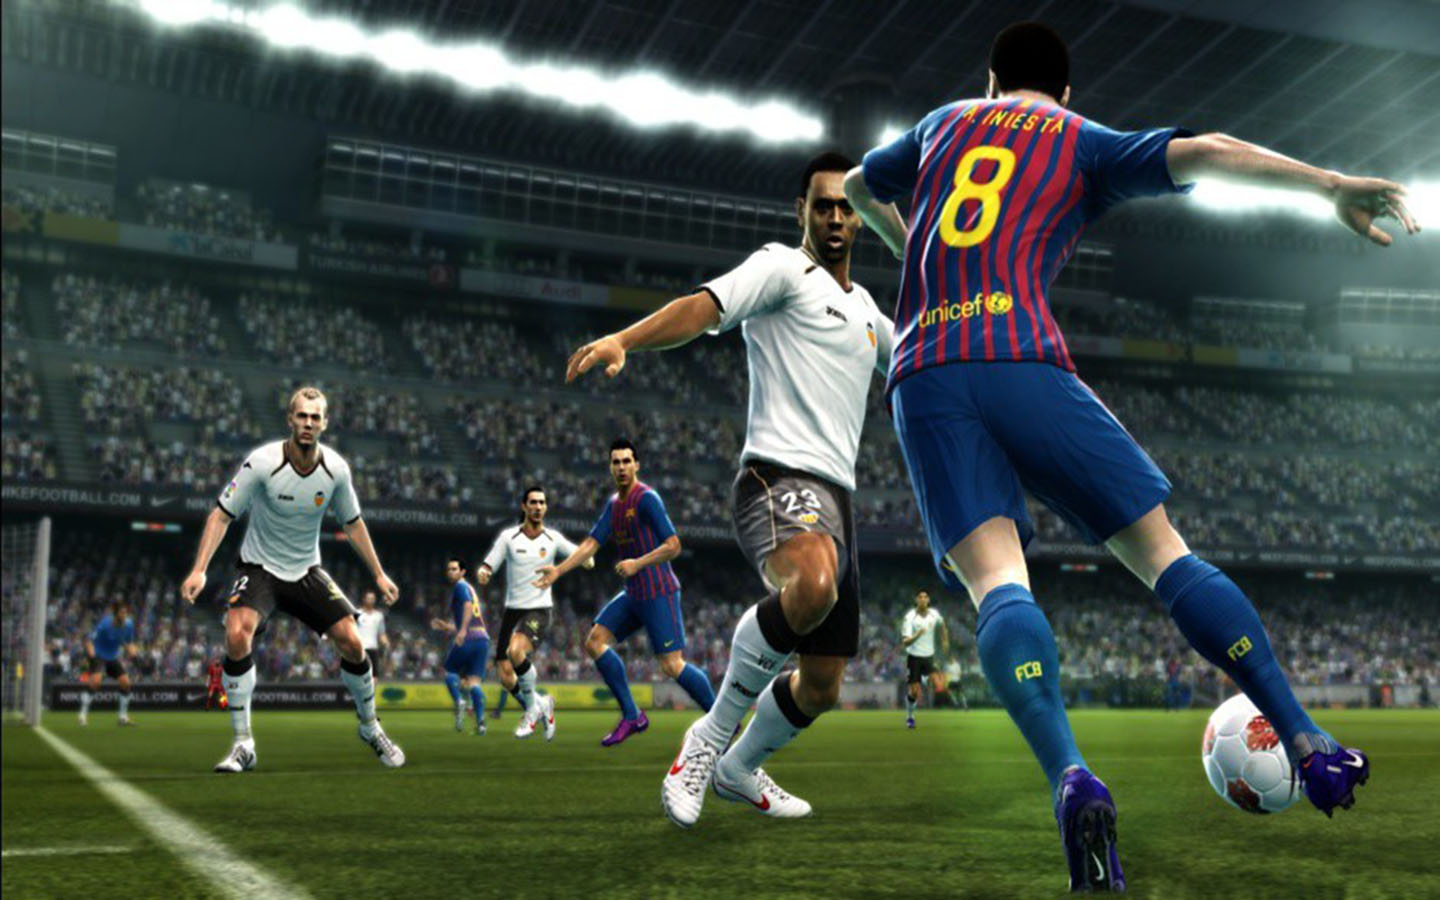 La Evolución del Fútbol en los Videojuegos - Power Gaming Network